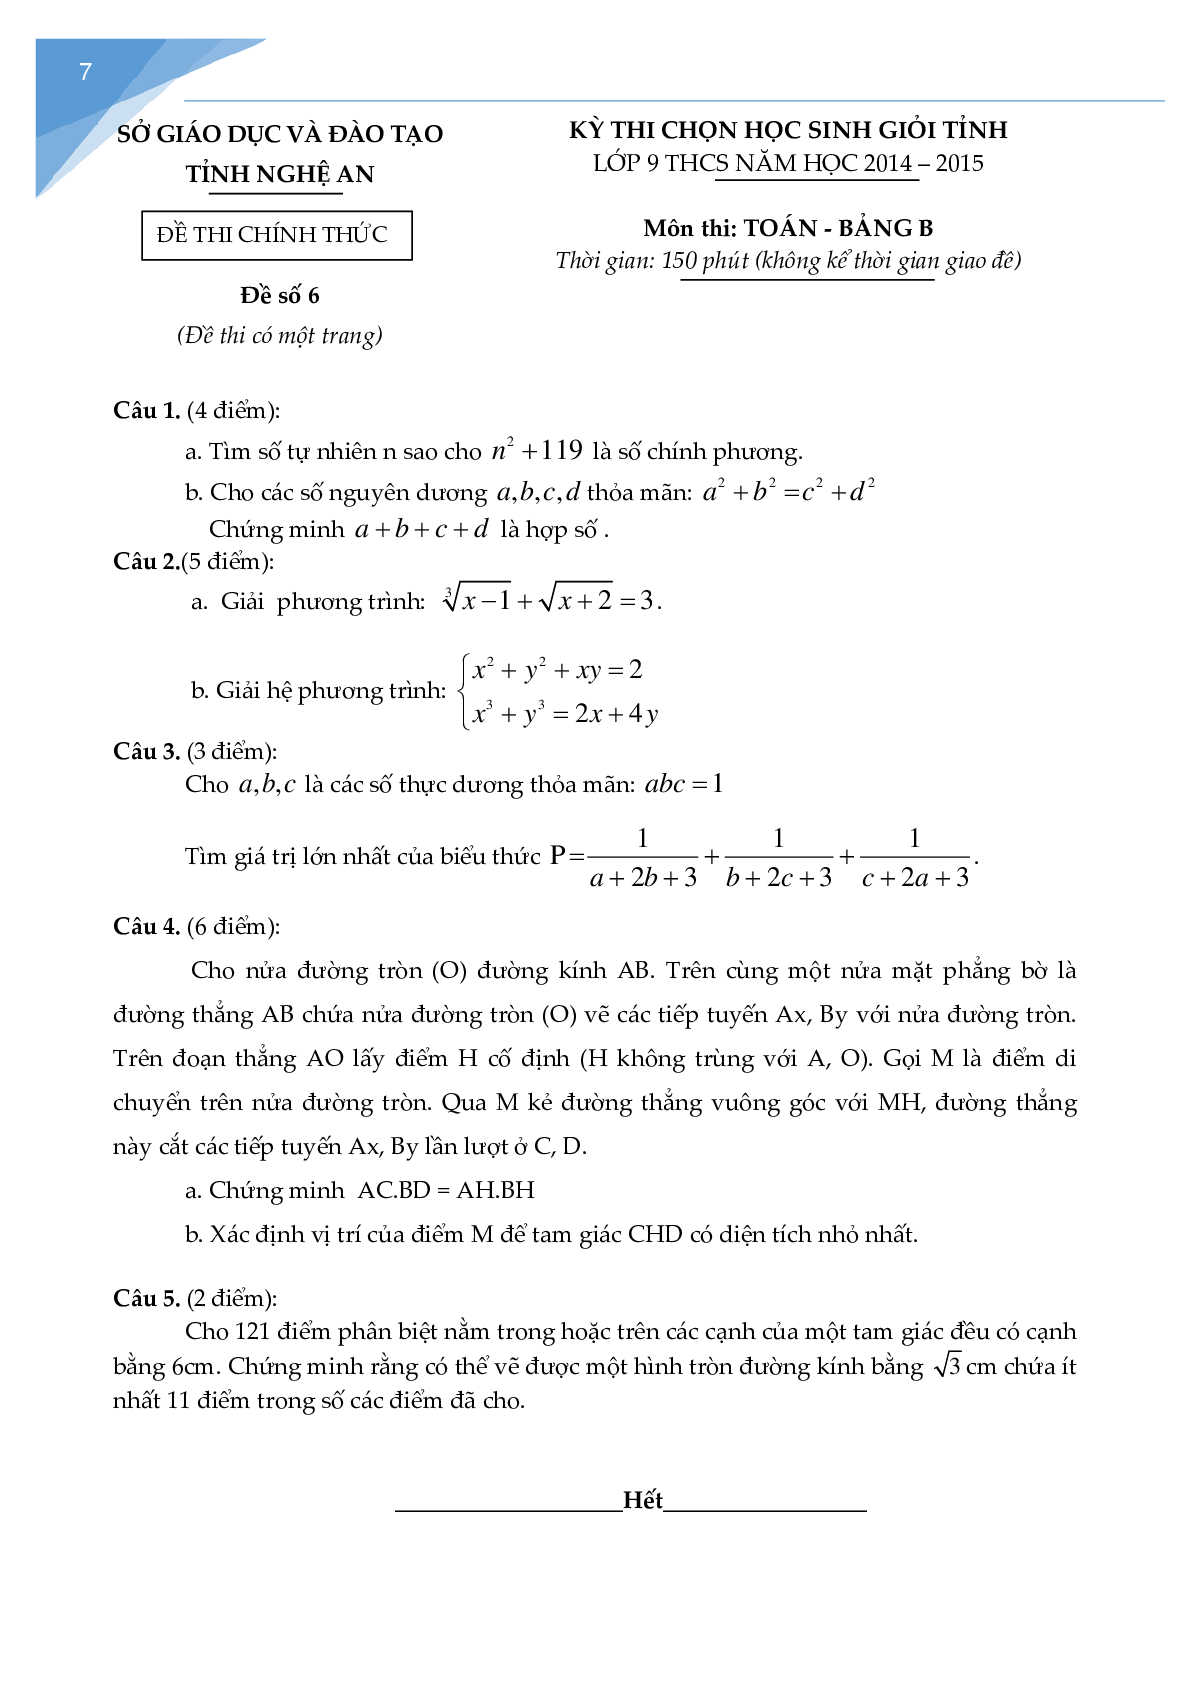 Bộ đề thi học sinh giỏi toán lớp 9 tỉnh Nghệ An (trang 6)